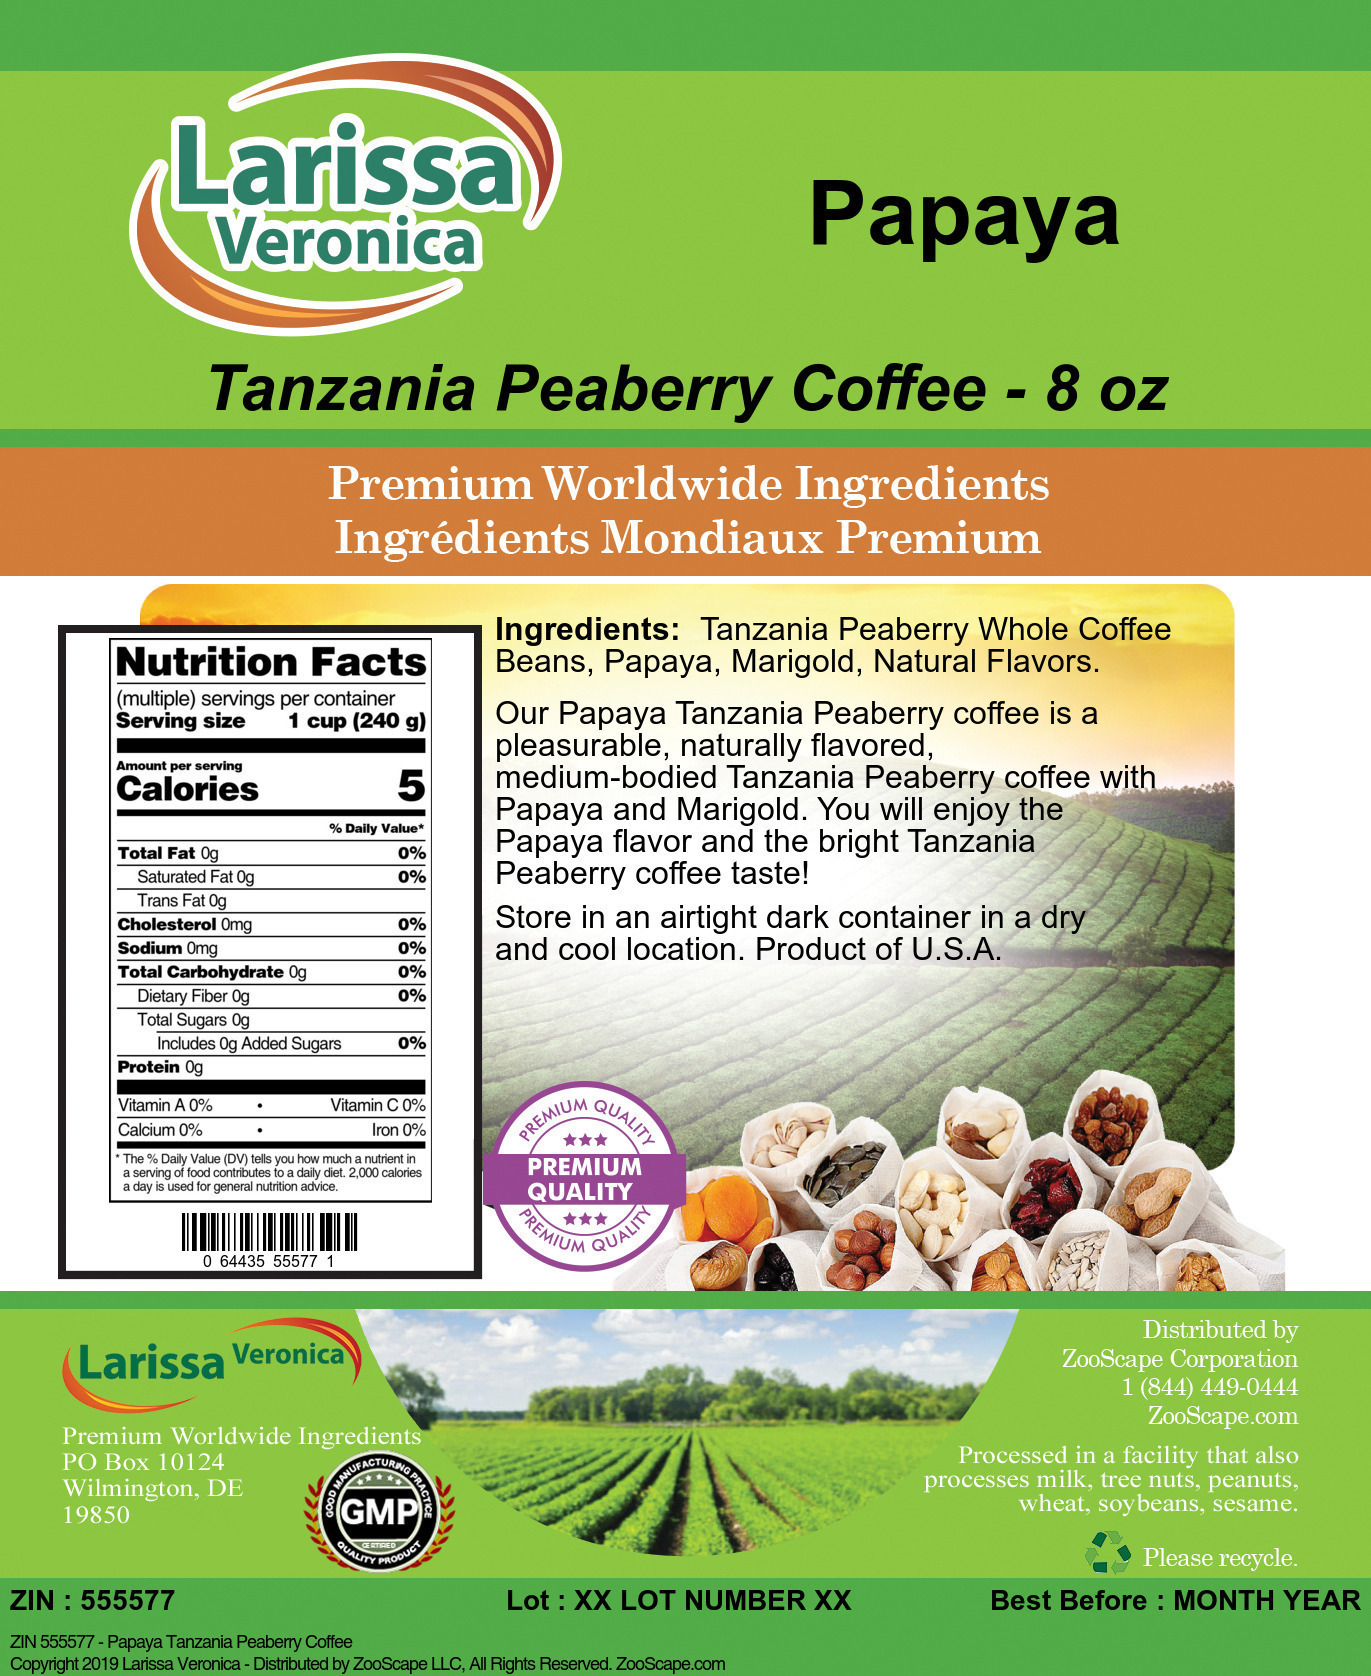 Papaya Tanzania Peaberry Coffee - Label